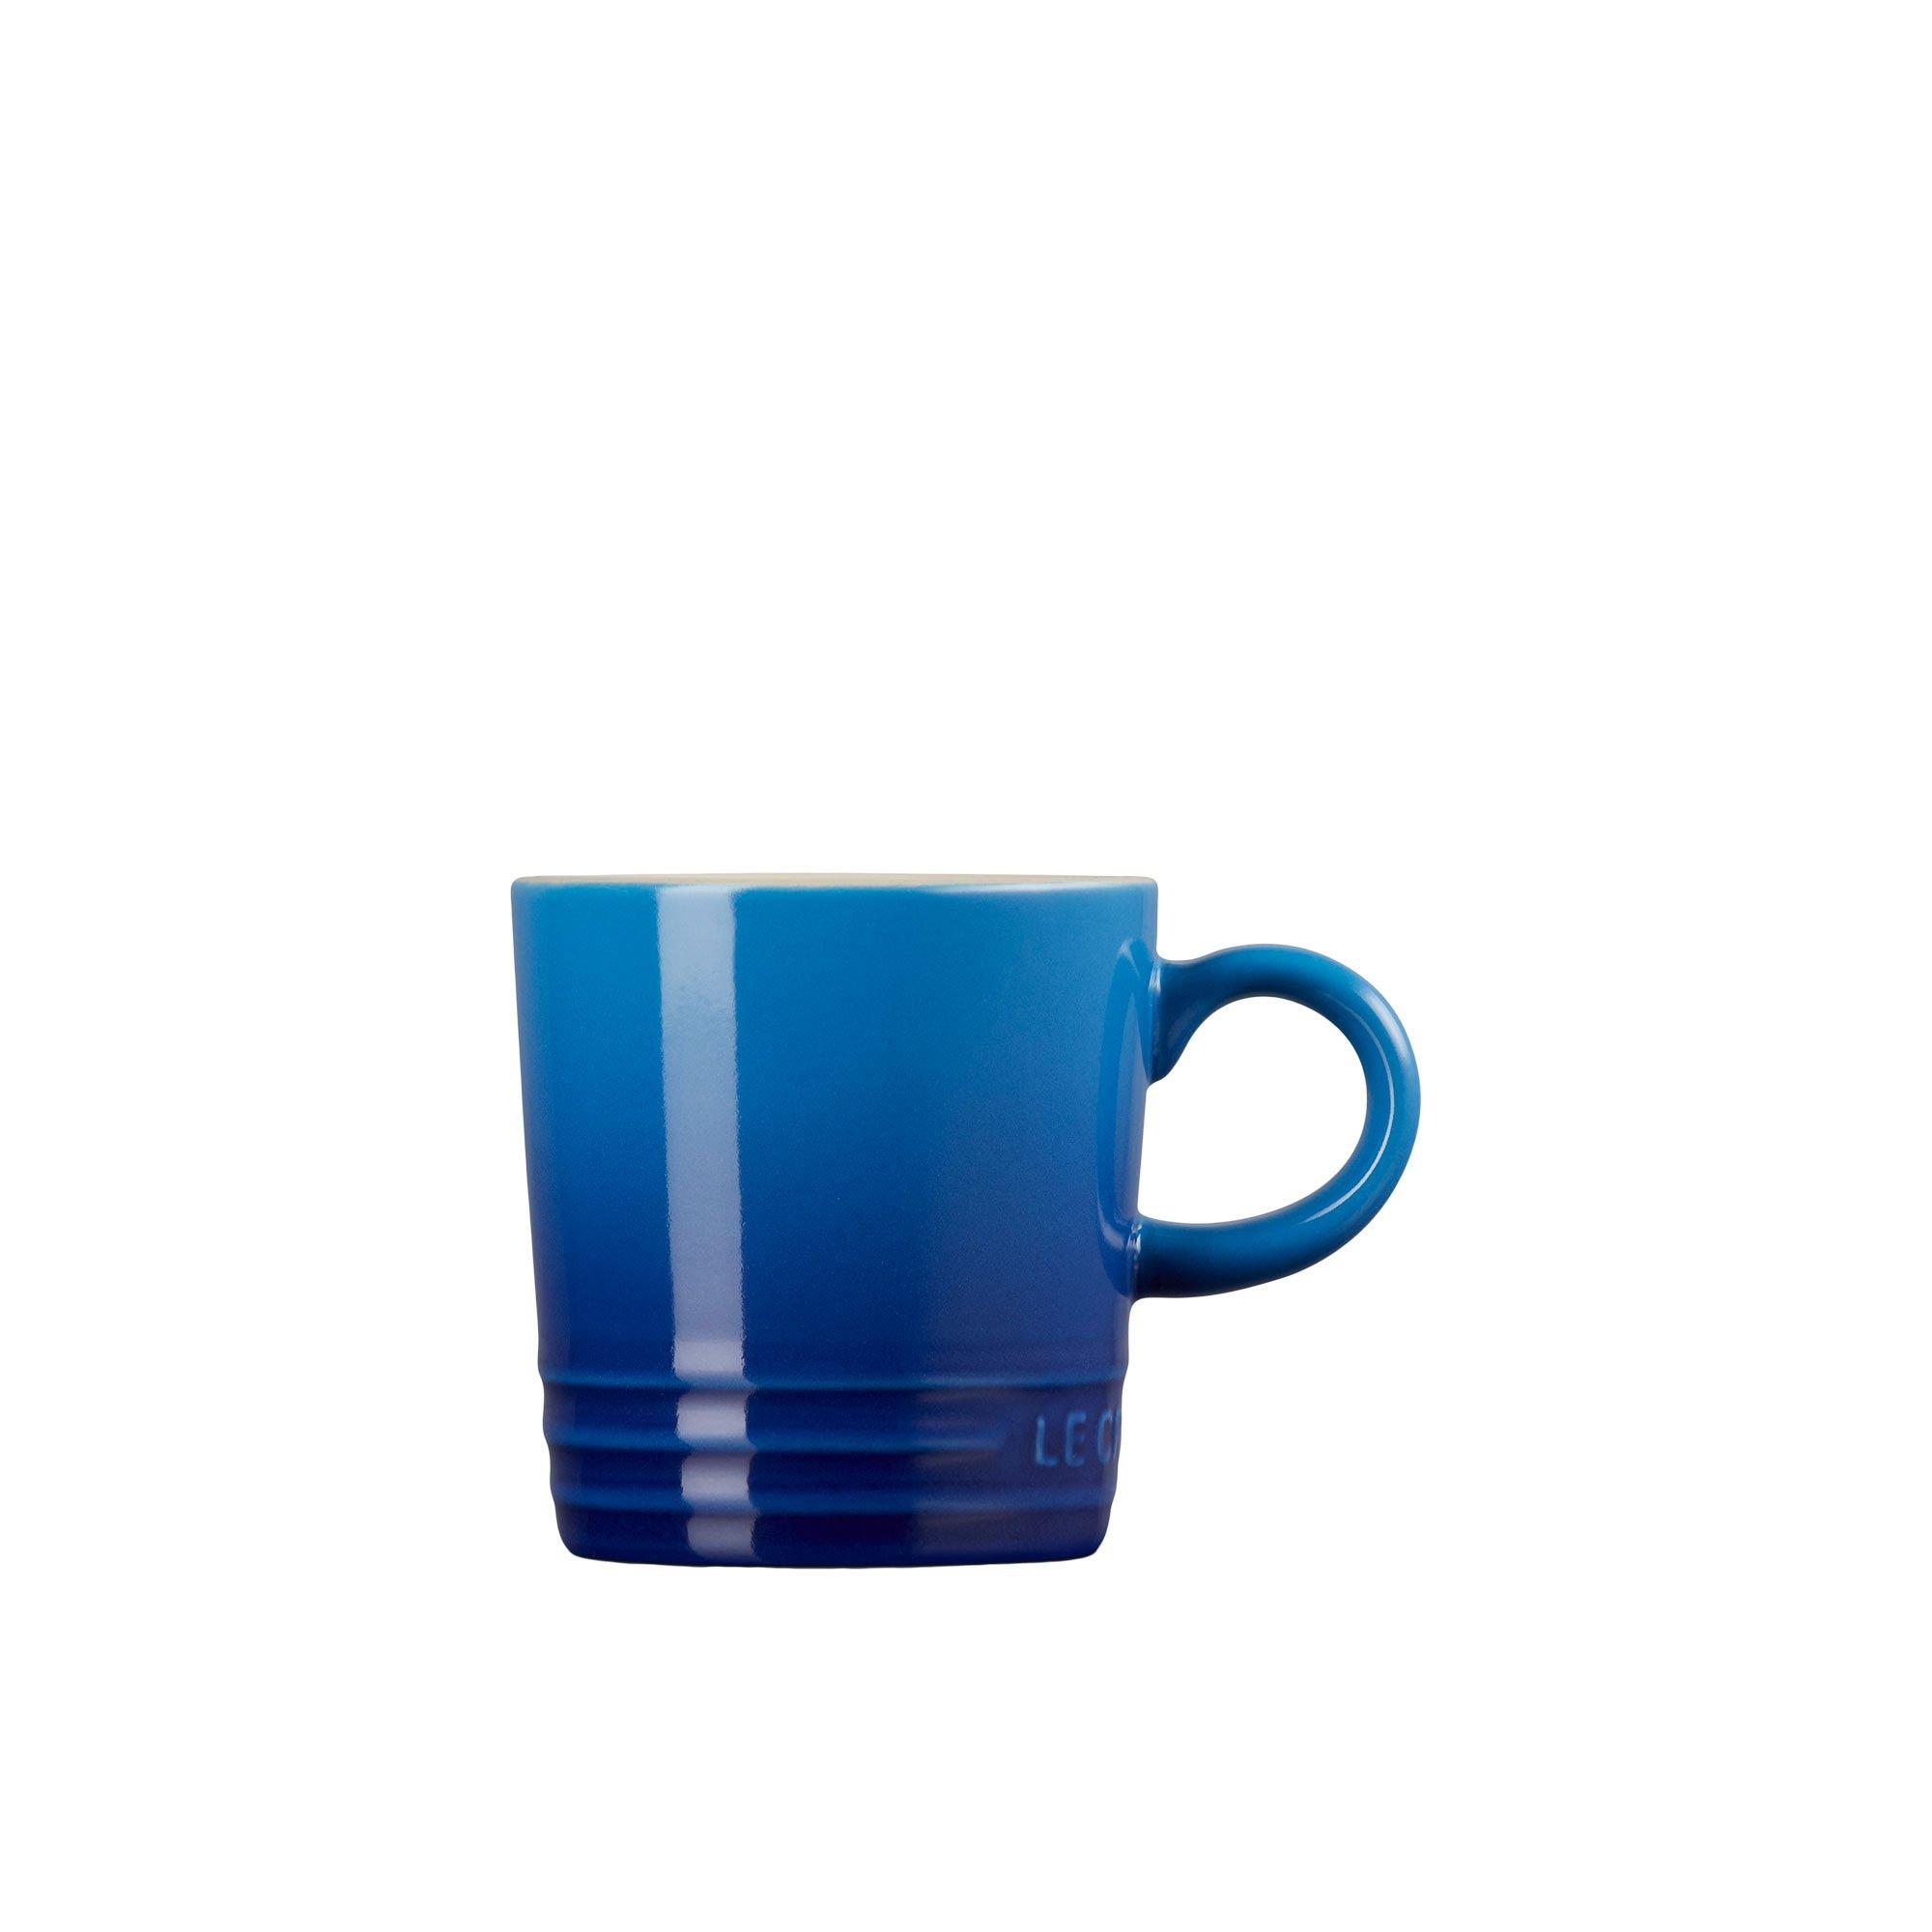 Le Creuset Stoneware Espresso Mug 100ml Azure Blue Image 3